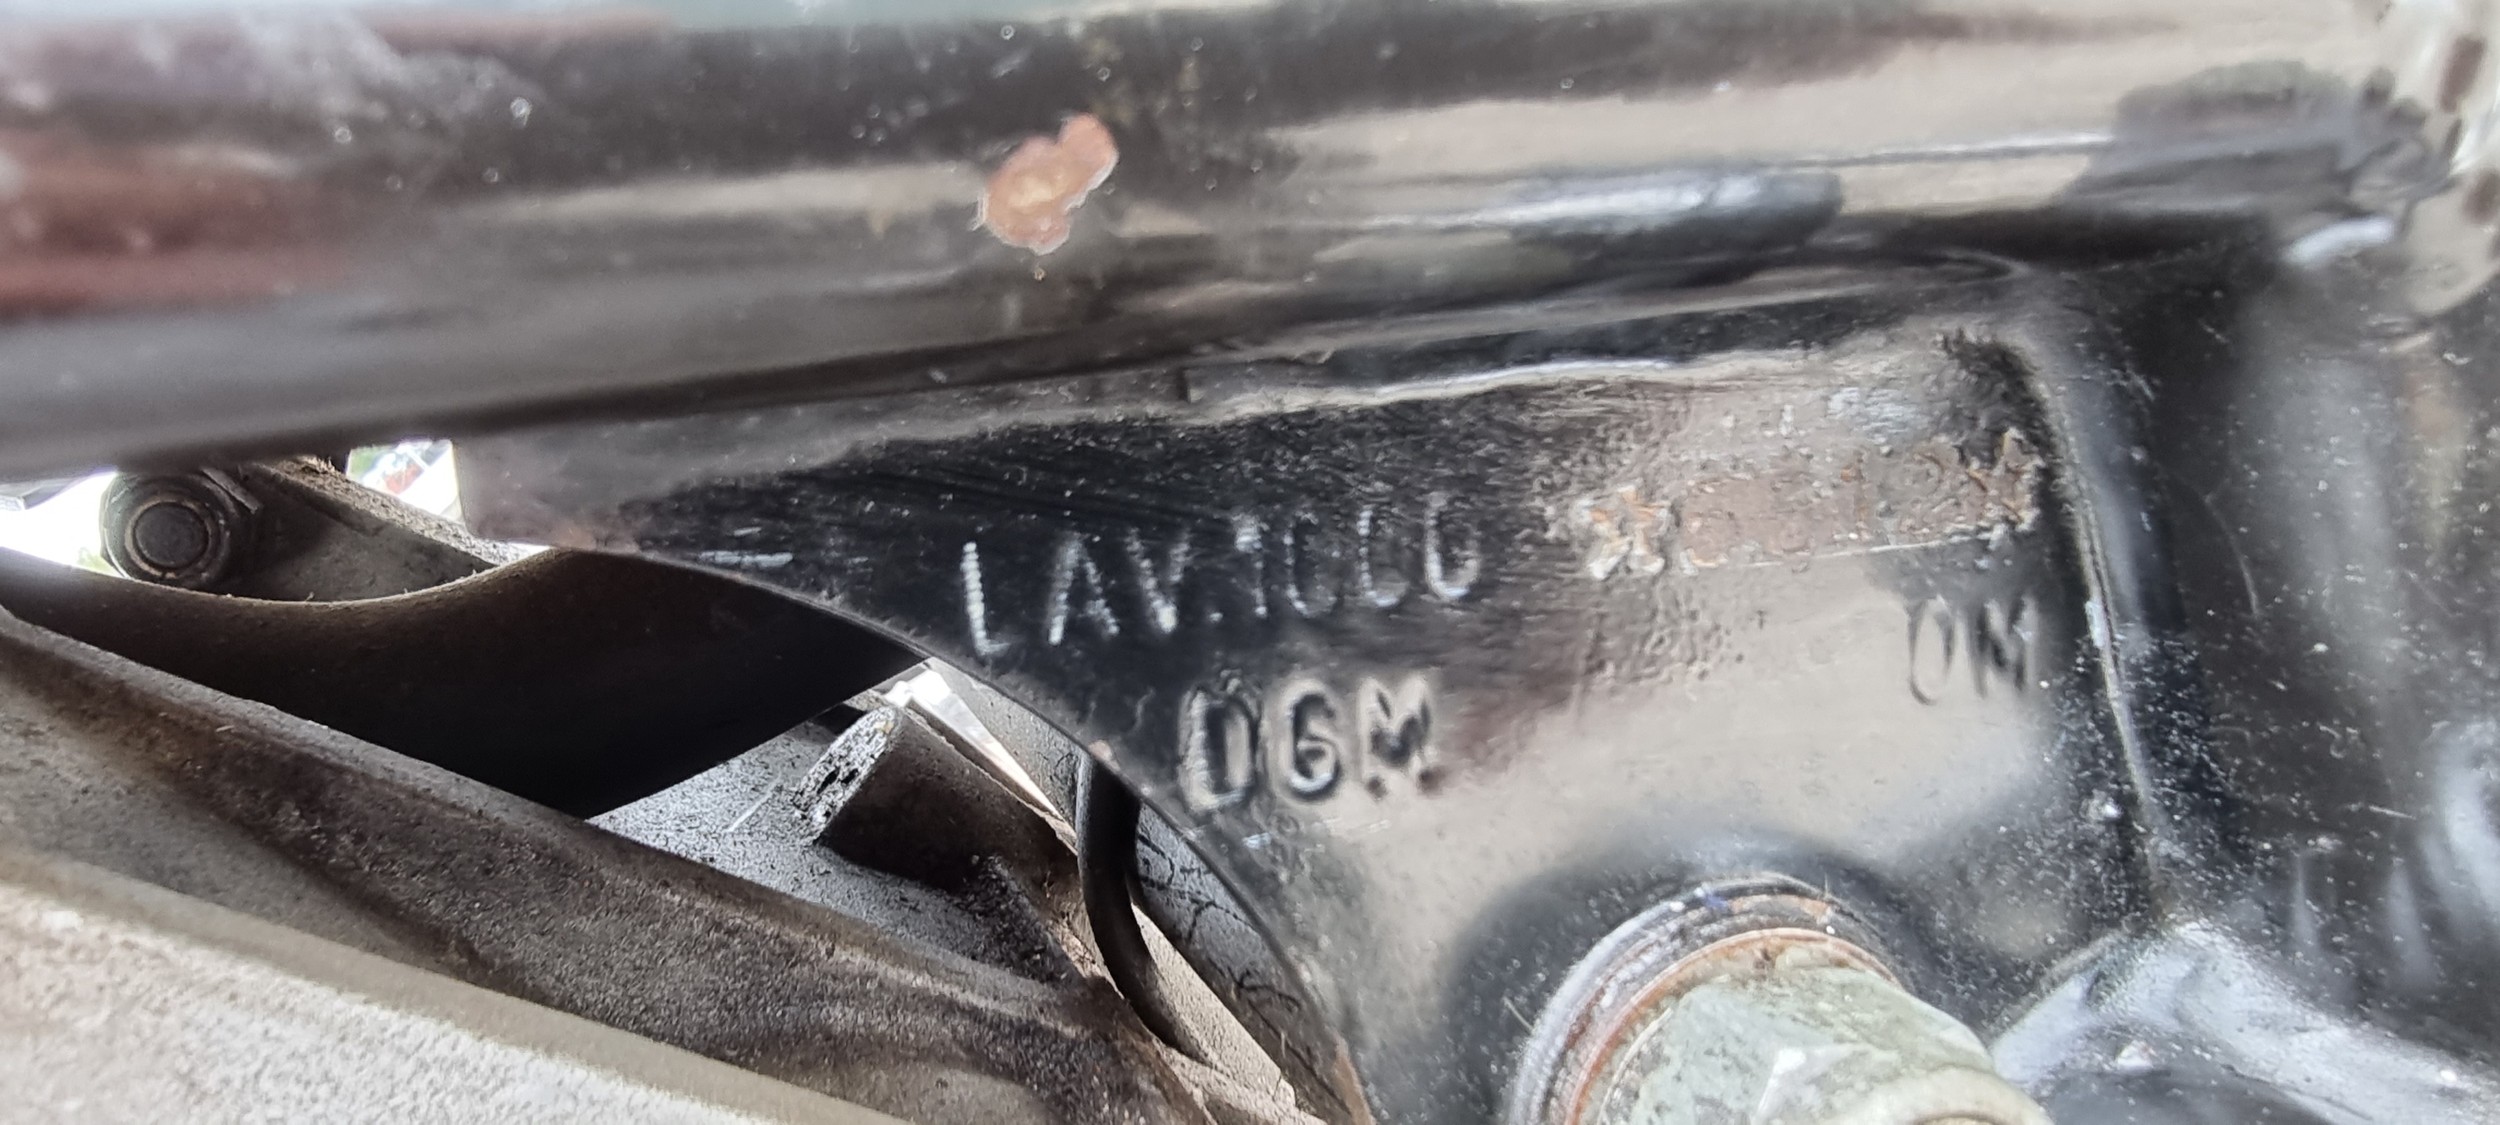 1977 Laverda Jota 180, 981cc. Registration number TTM 240R. Frame number LAV 1000 5512. Engine - Image 12 of 13